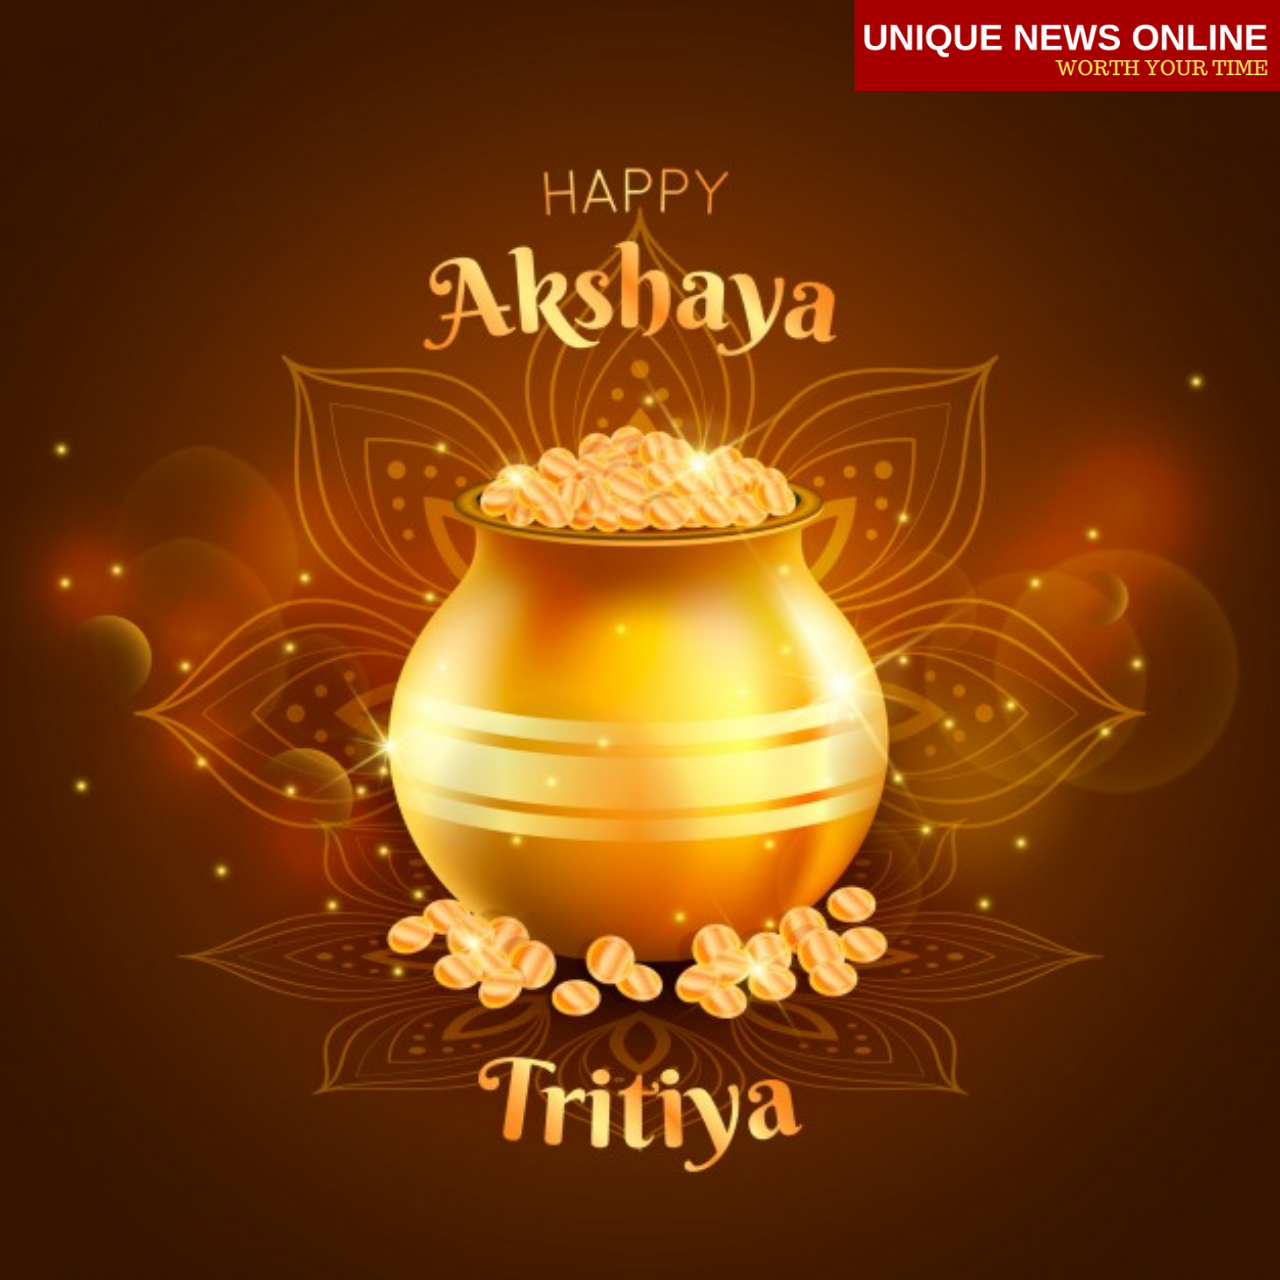 Wishing you a very Happy Akshaya Tritiya